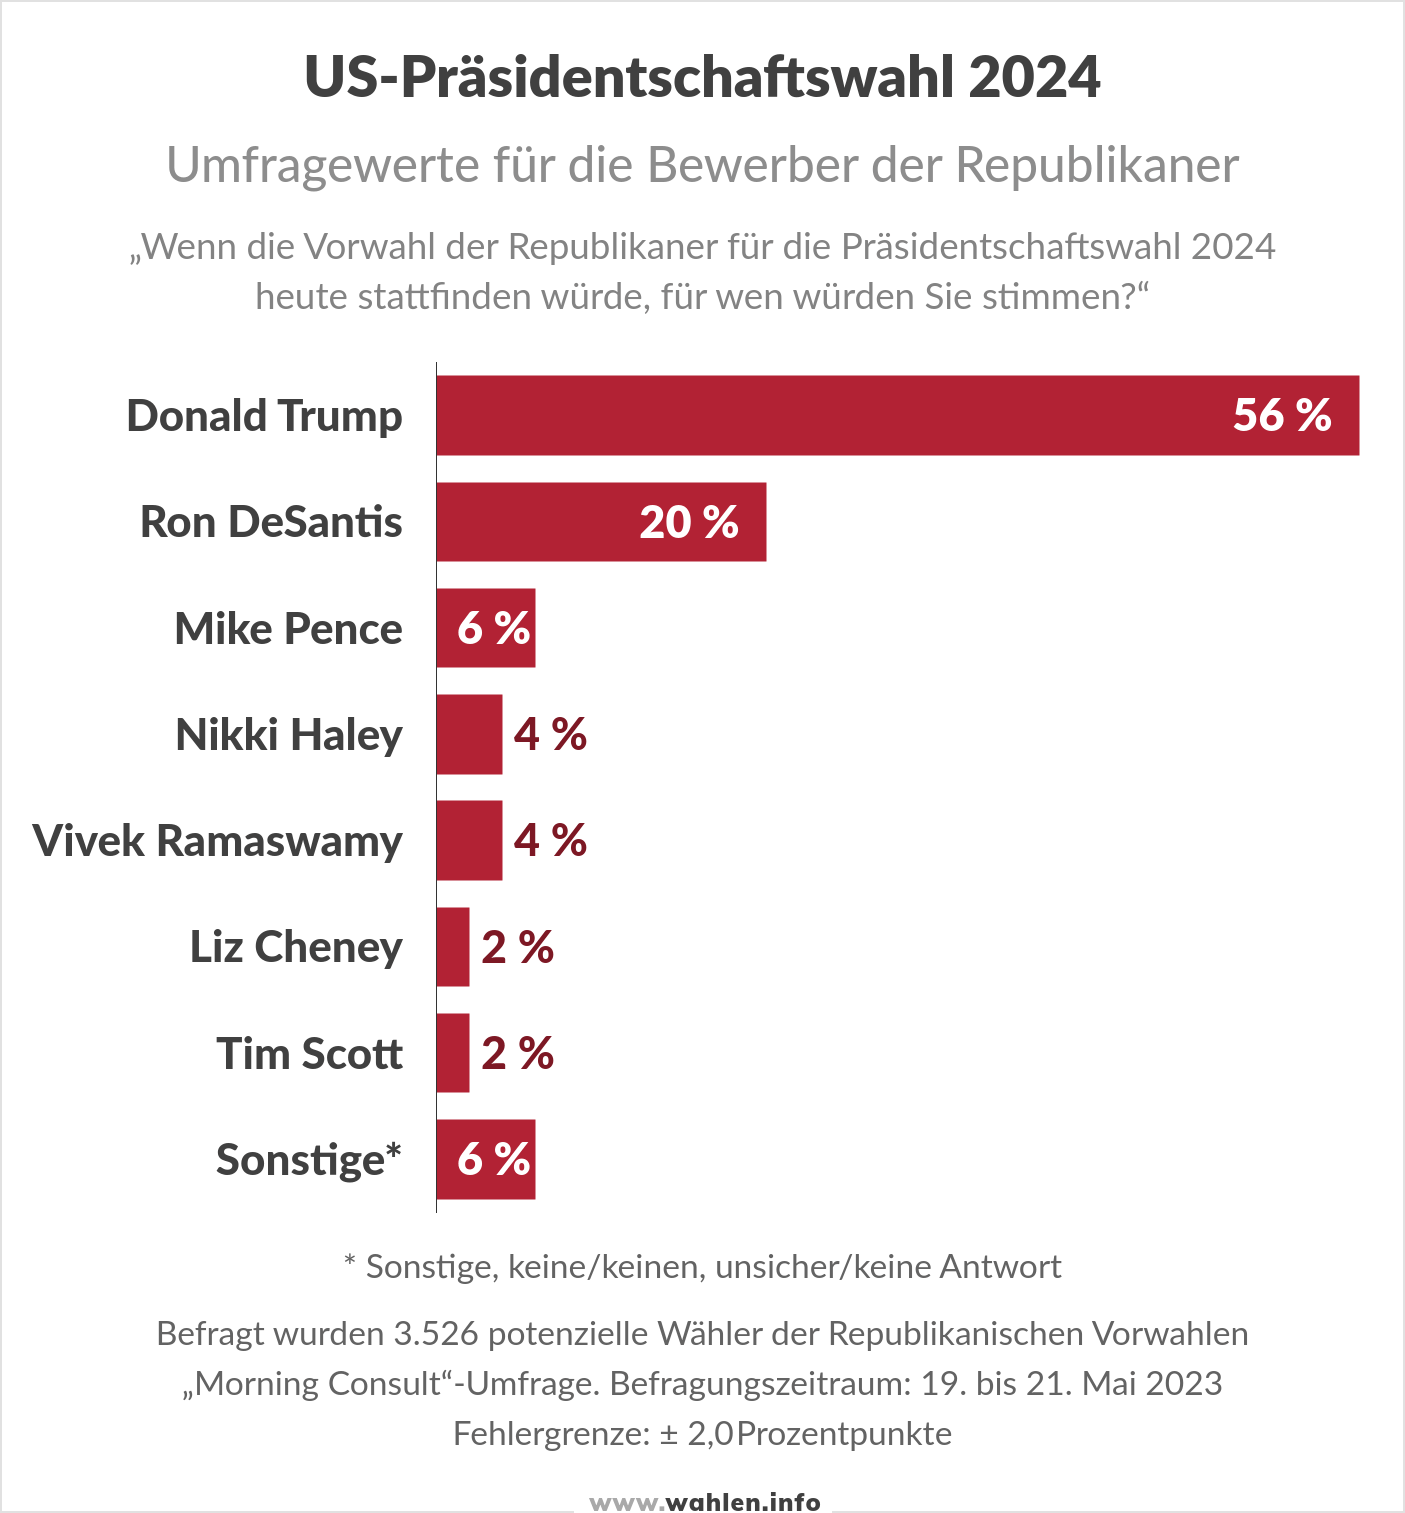 US-Wahl 2024 - Umfragen Vorwahlen der Republikaner (Trump, DeSantis, Pence, Haley, Ramaswamy, Cheney)